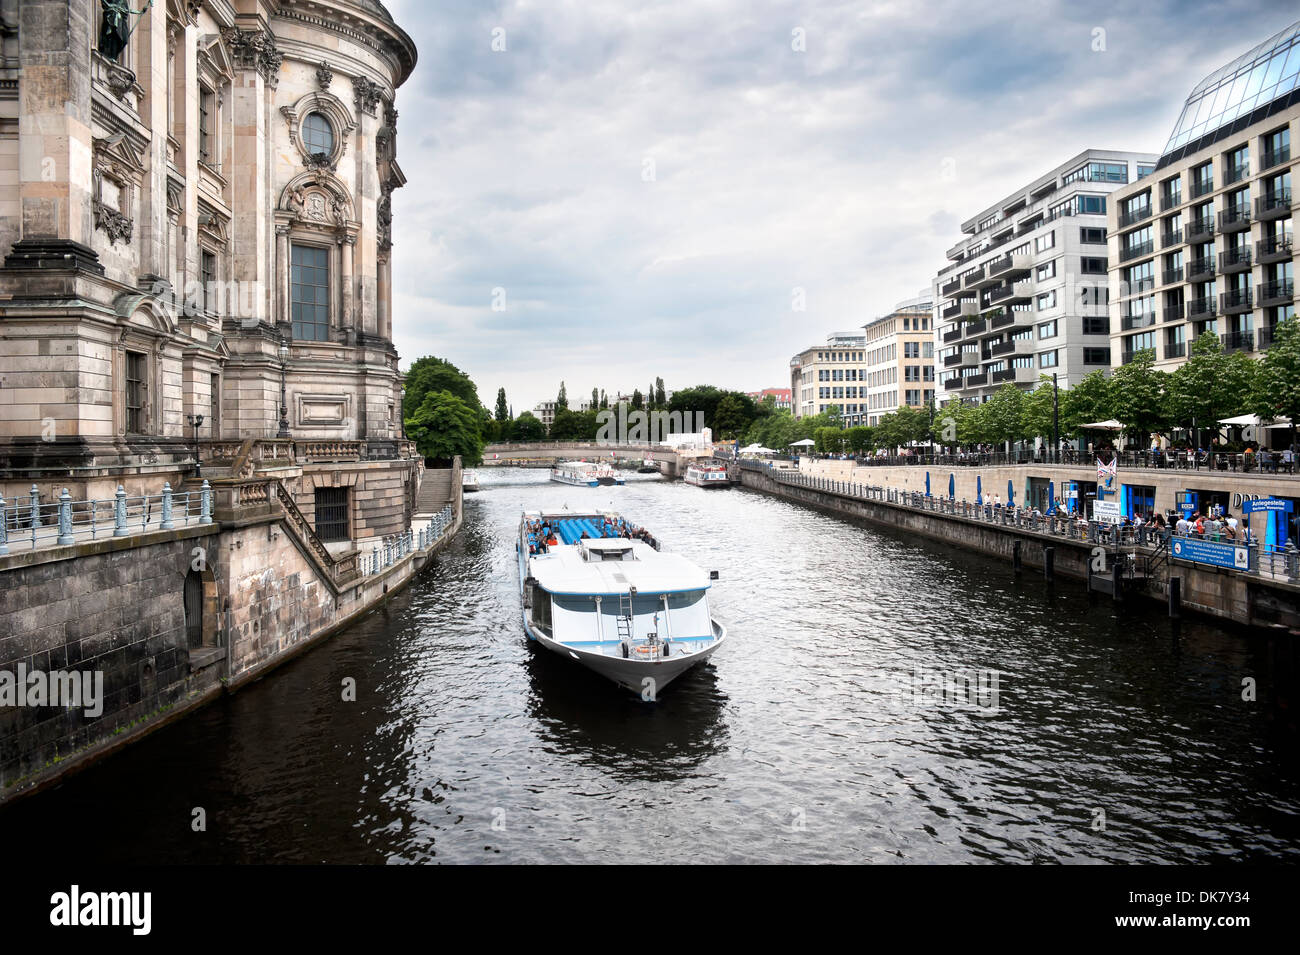 Spree river in Berlin, Germany Stock Photo